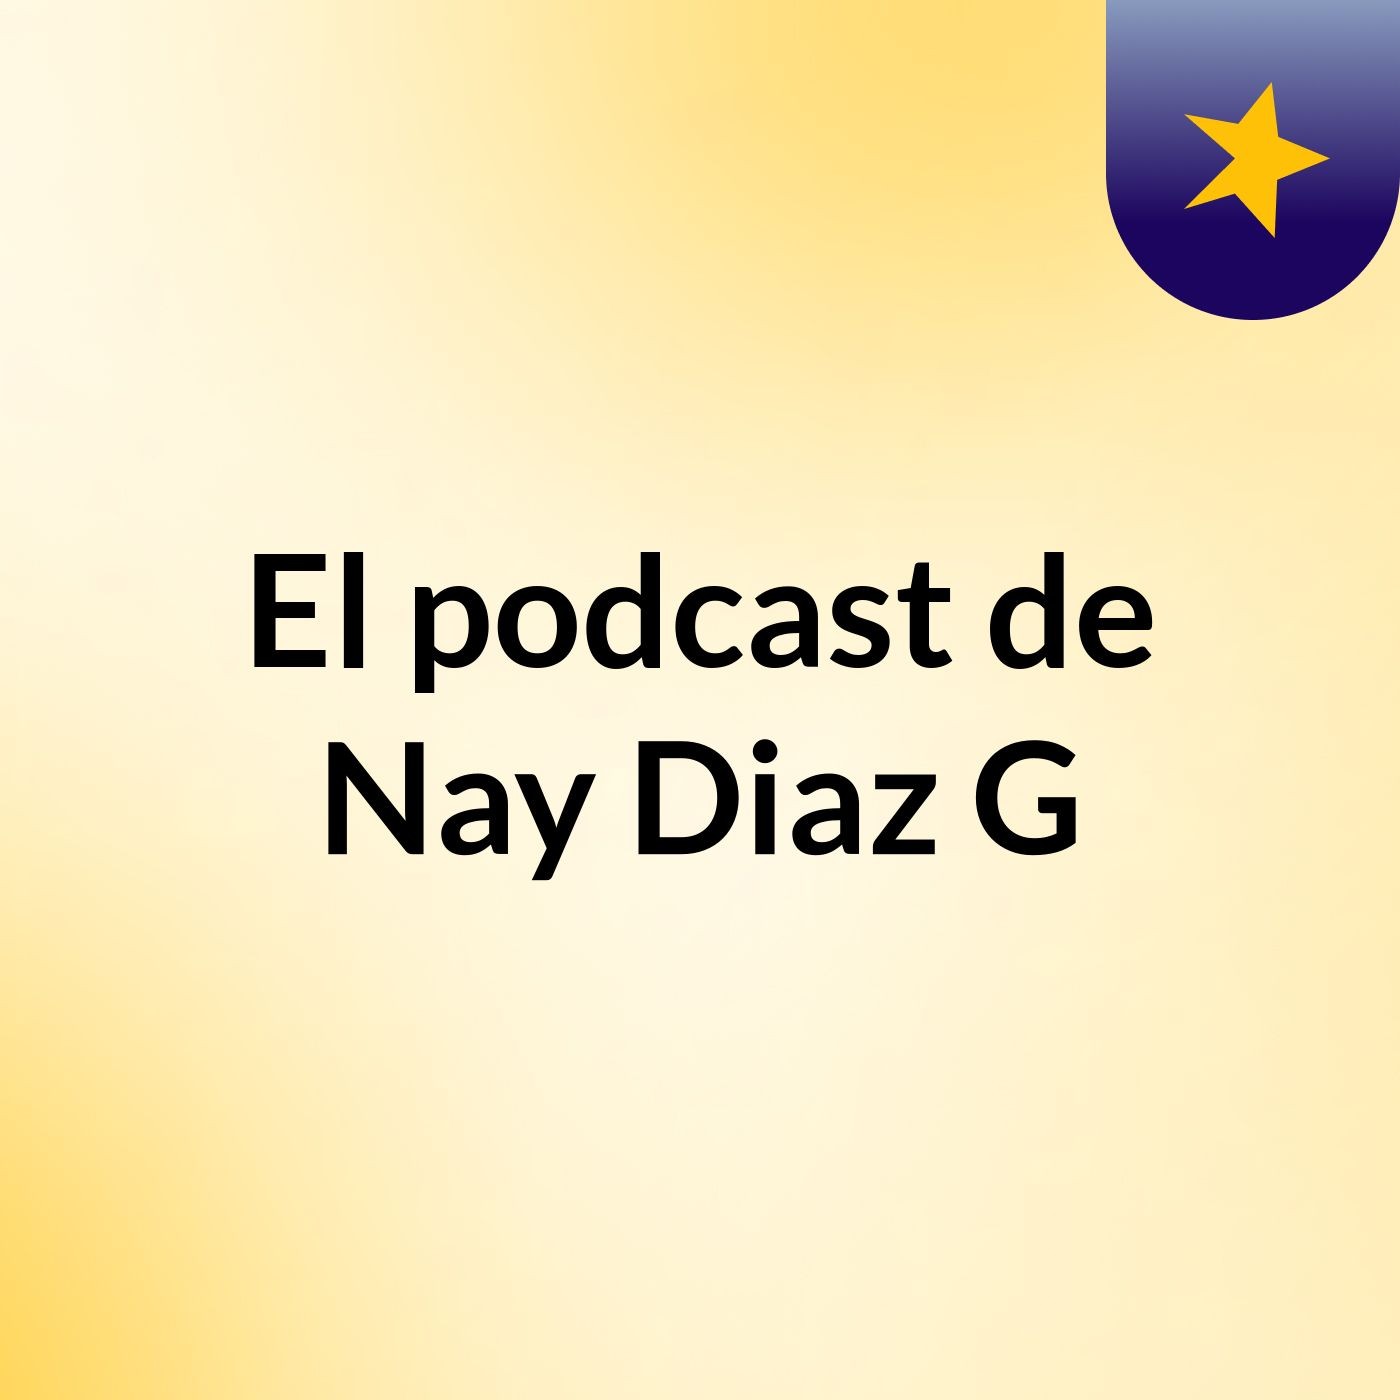 El podcast de Nay Diaz G